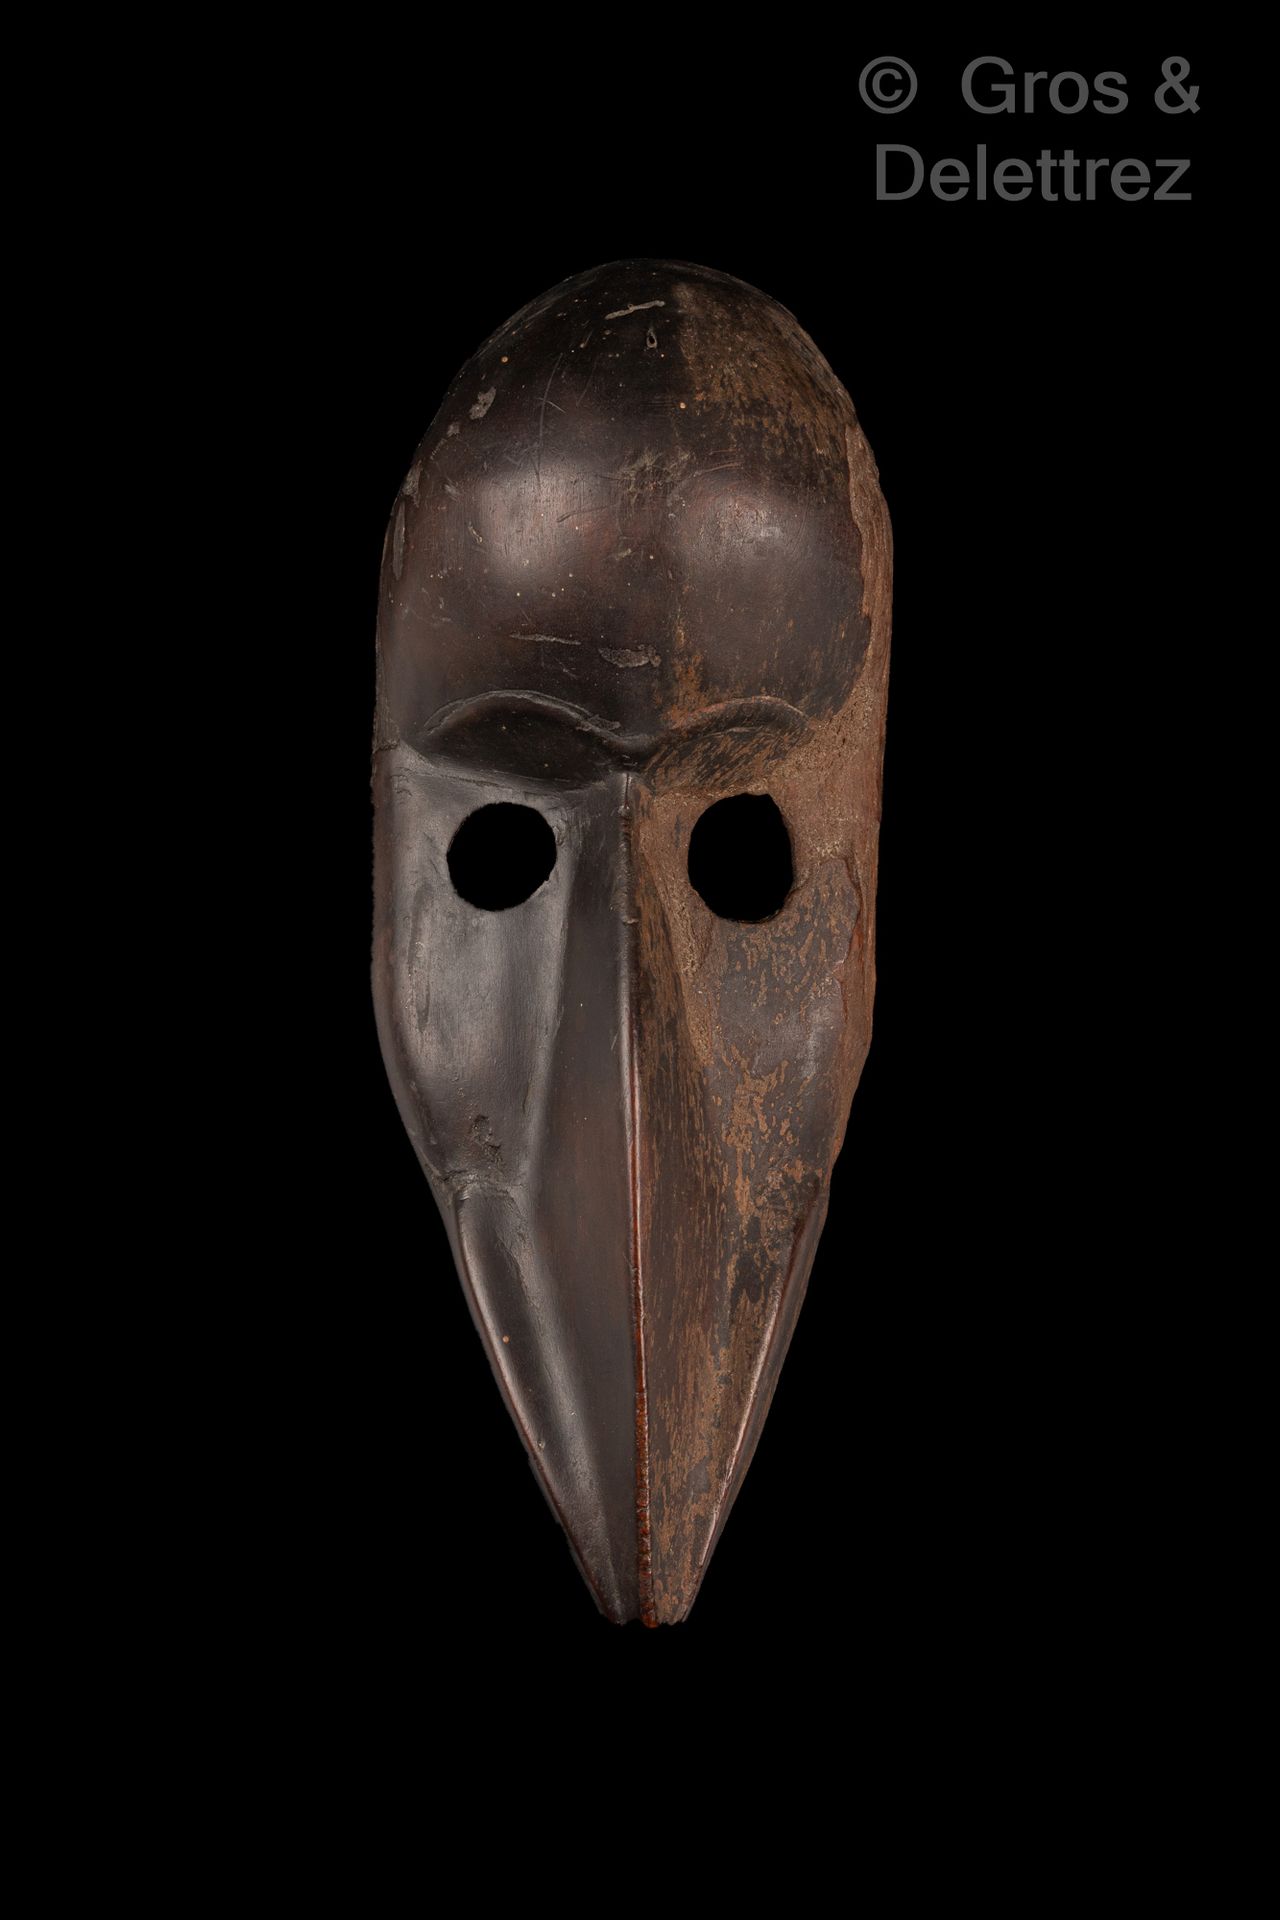 Null Máscara de pájaro

Dan personas

Costa de Marfil

Madera

H. 32 cm

Procede&hellip;